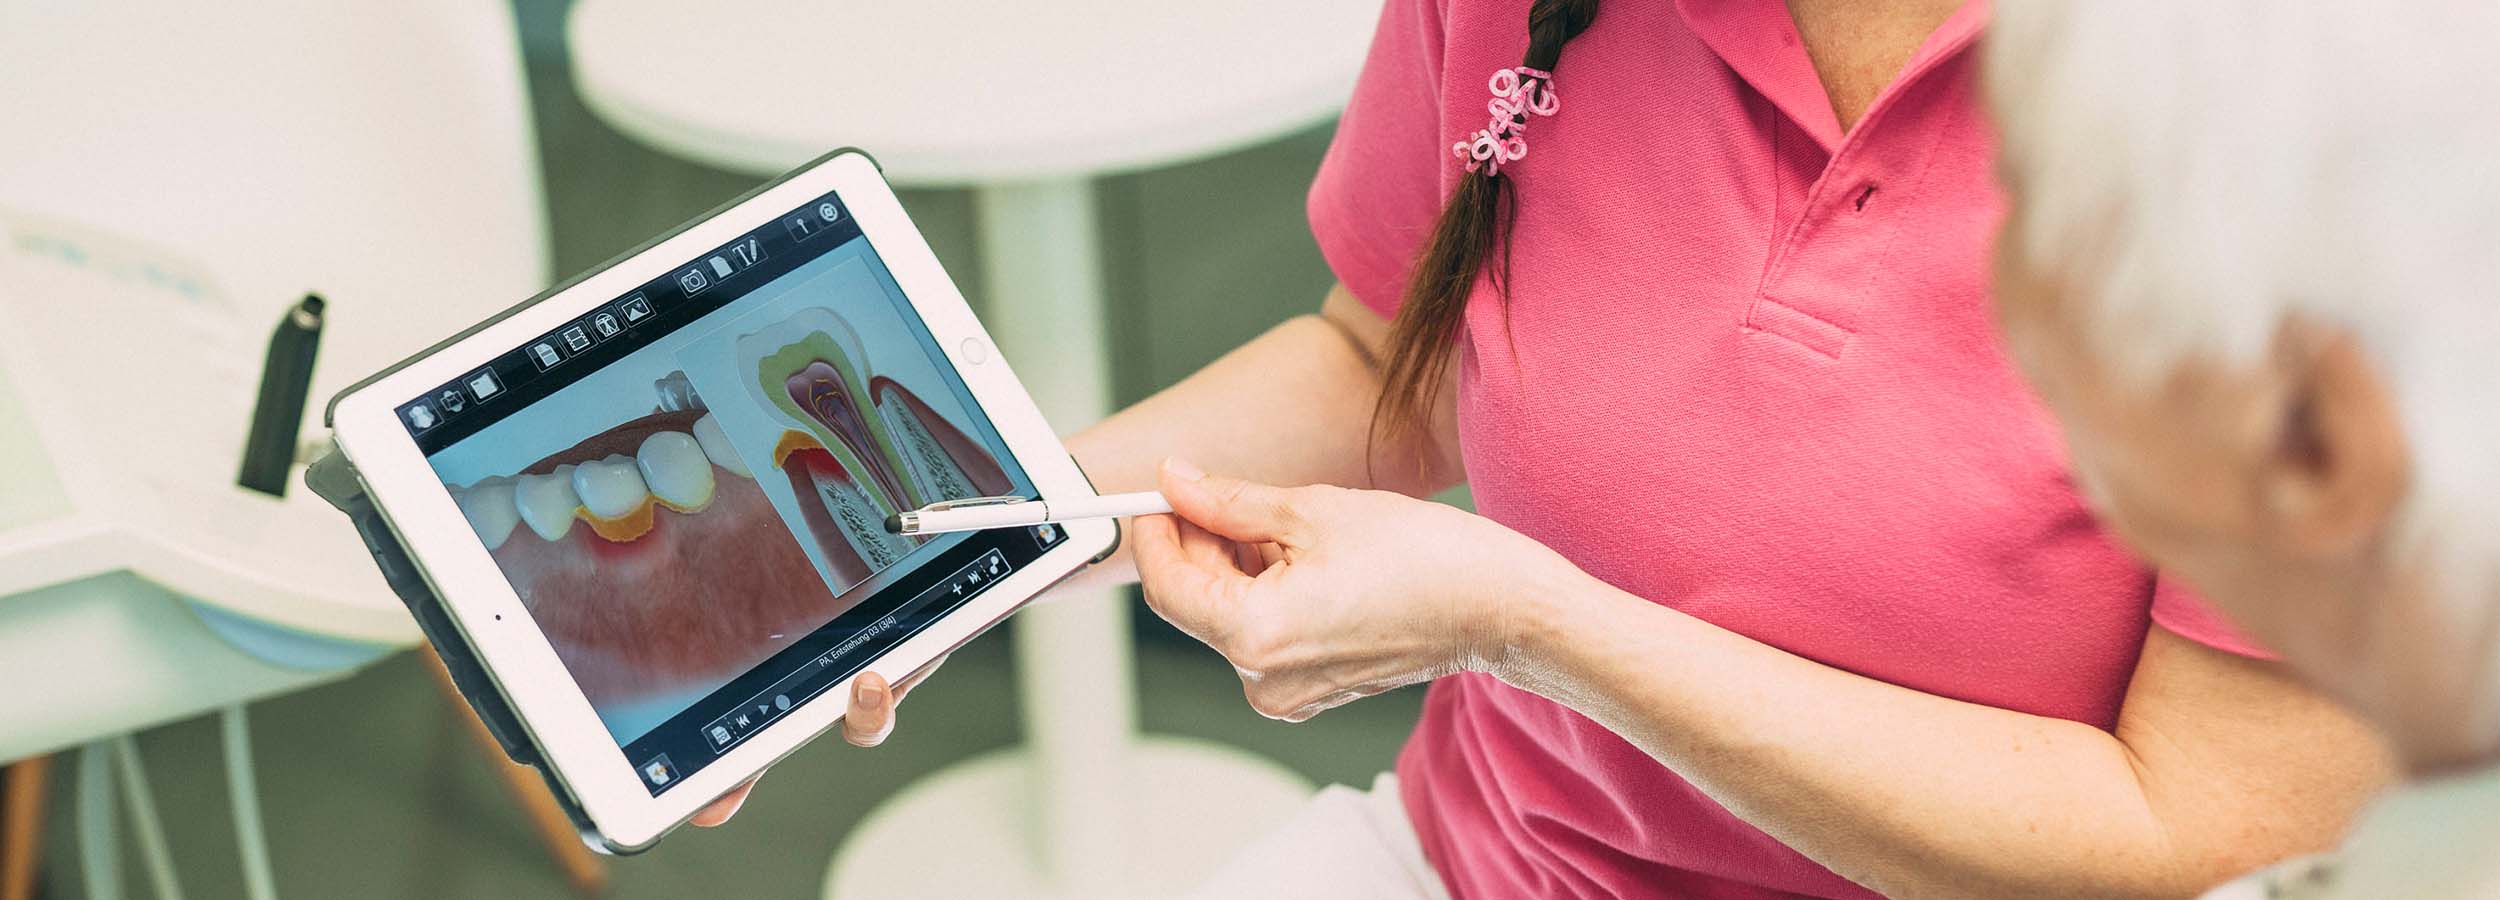 Detailaufnahme eines Tablets in der Hand einer Ärztin: Auf dem Bildschirm wird das Röntgen-Bild eines Parodontitis-Patienten gezeigt.